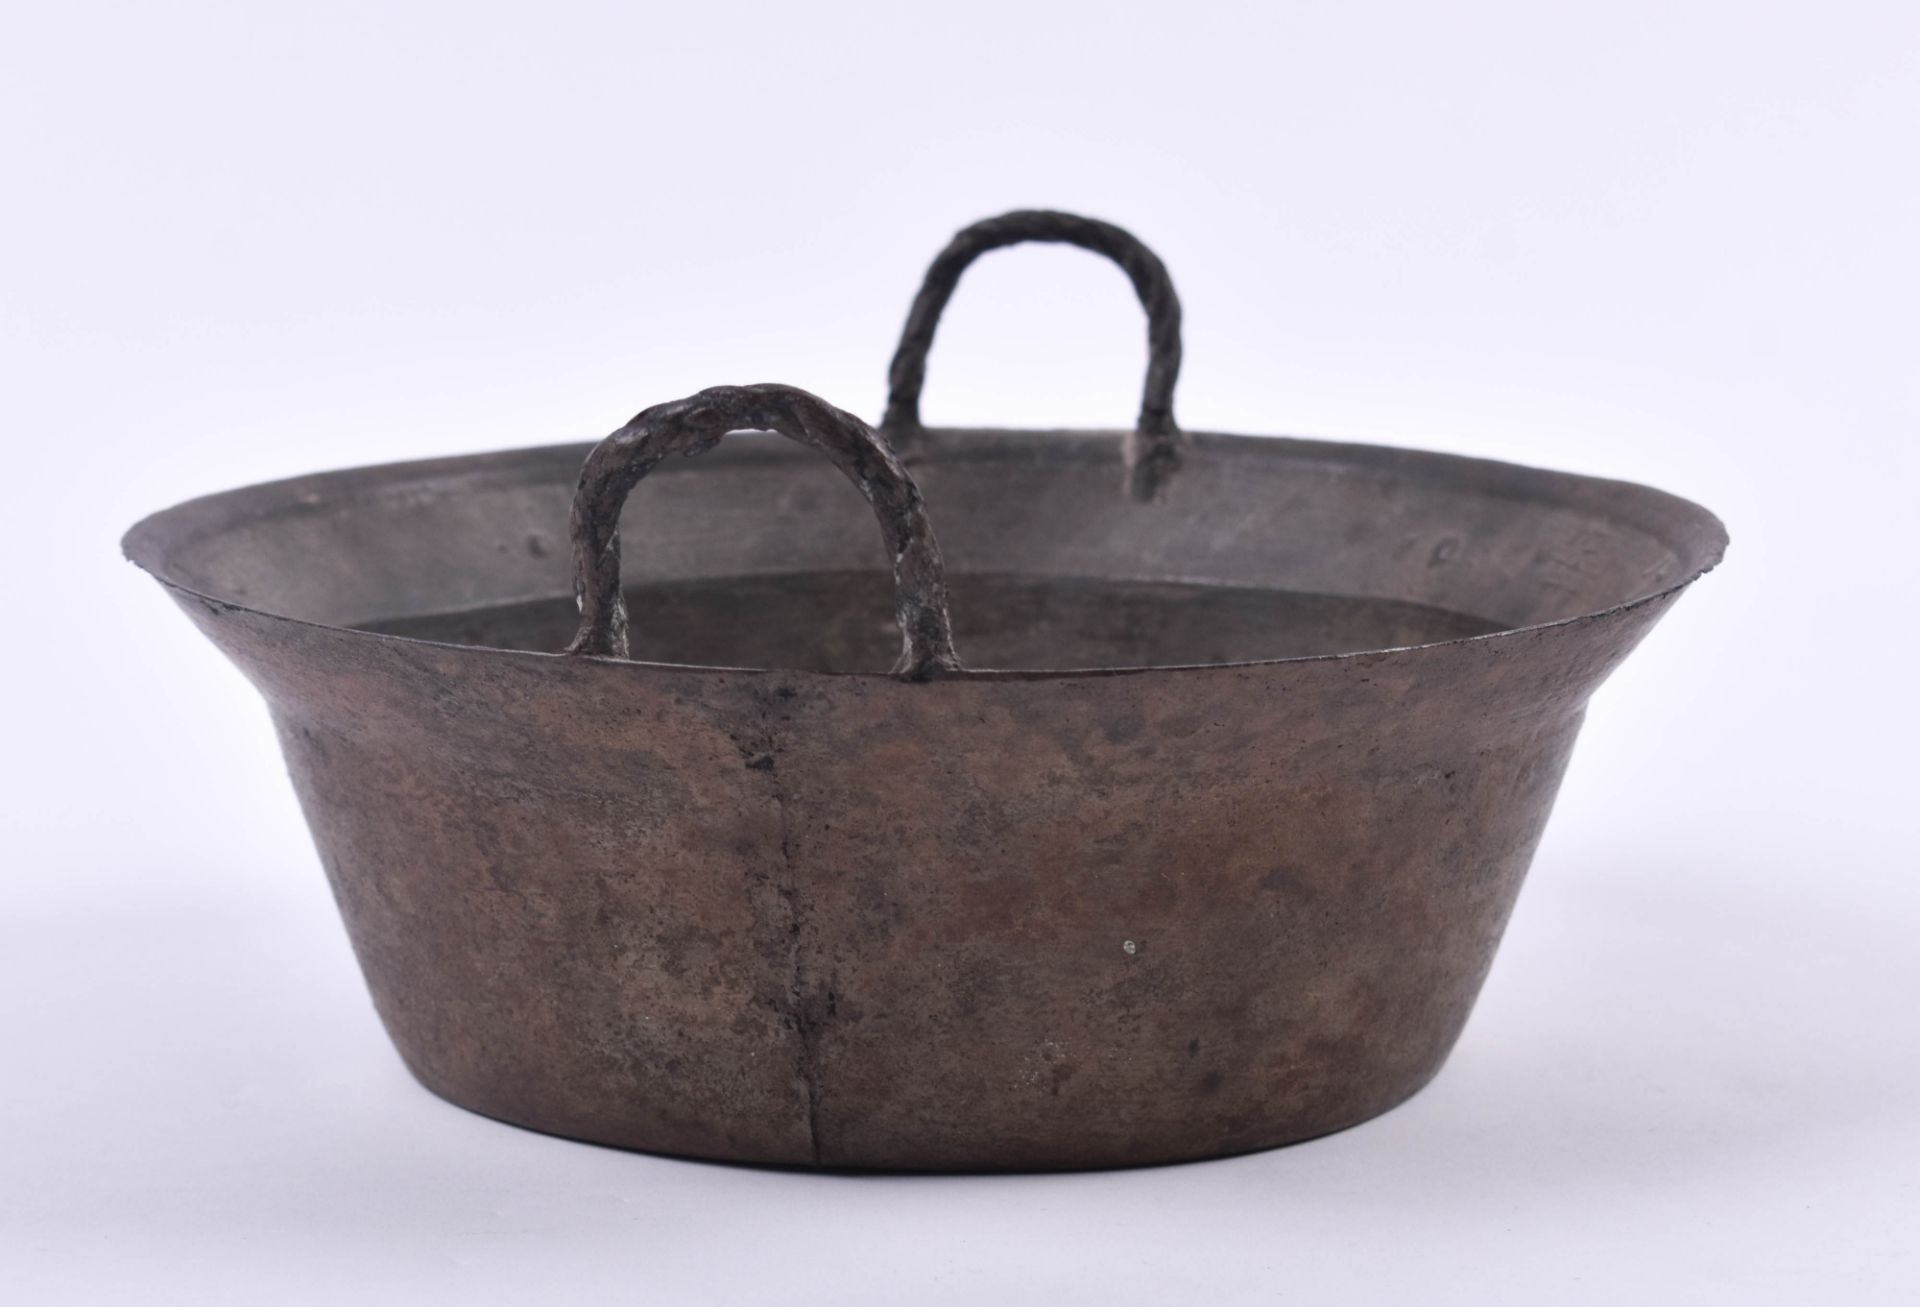  Ritual bowl China Qing dynasty - Image 4 of 6